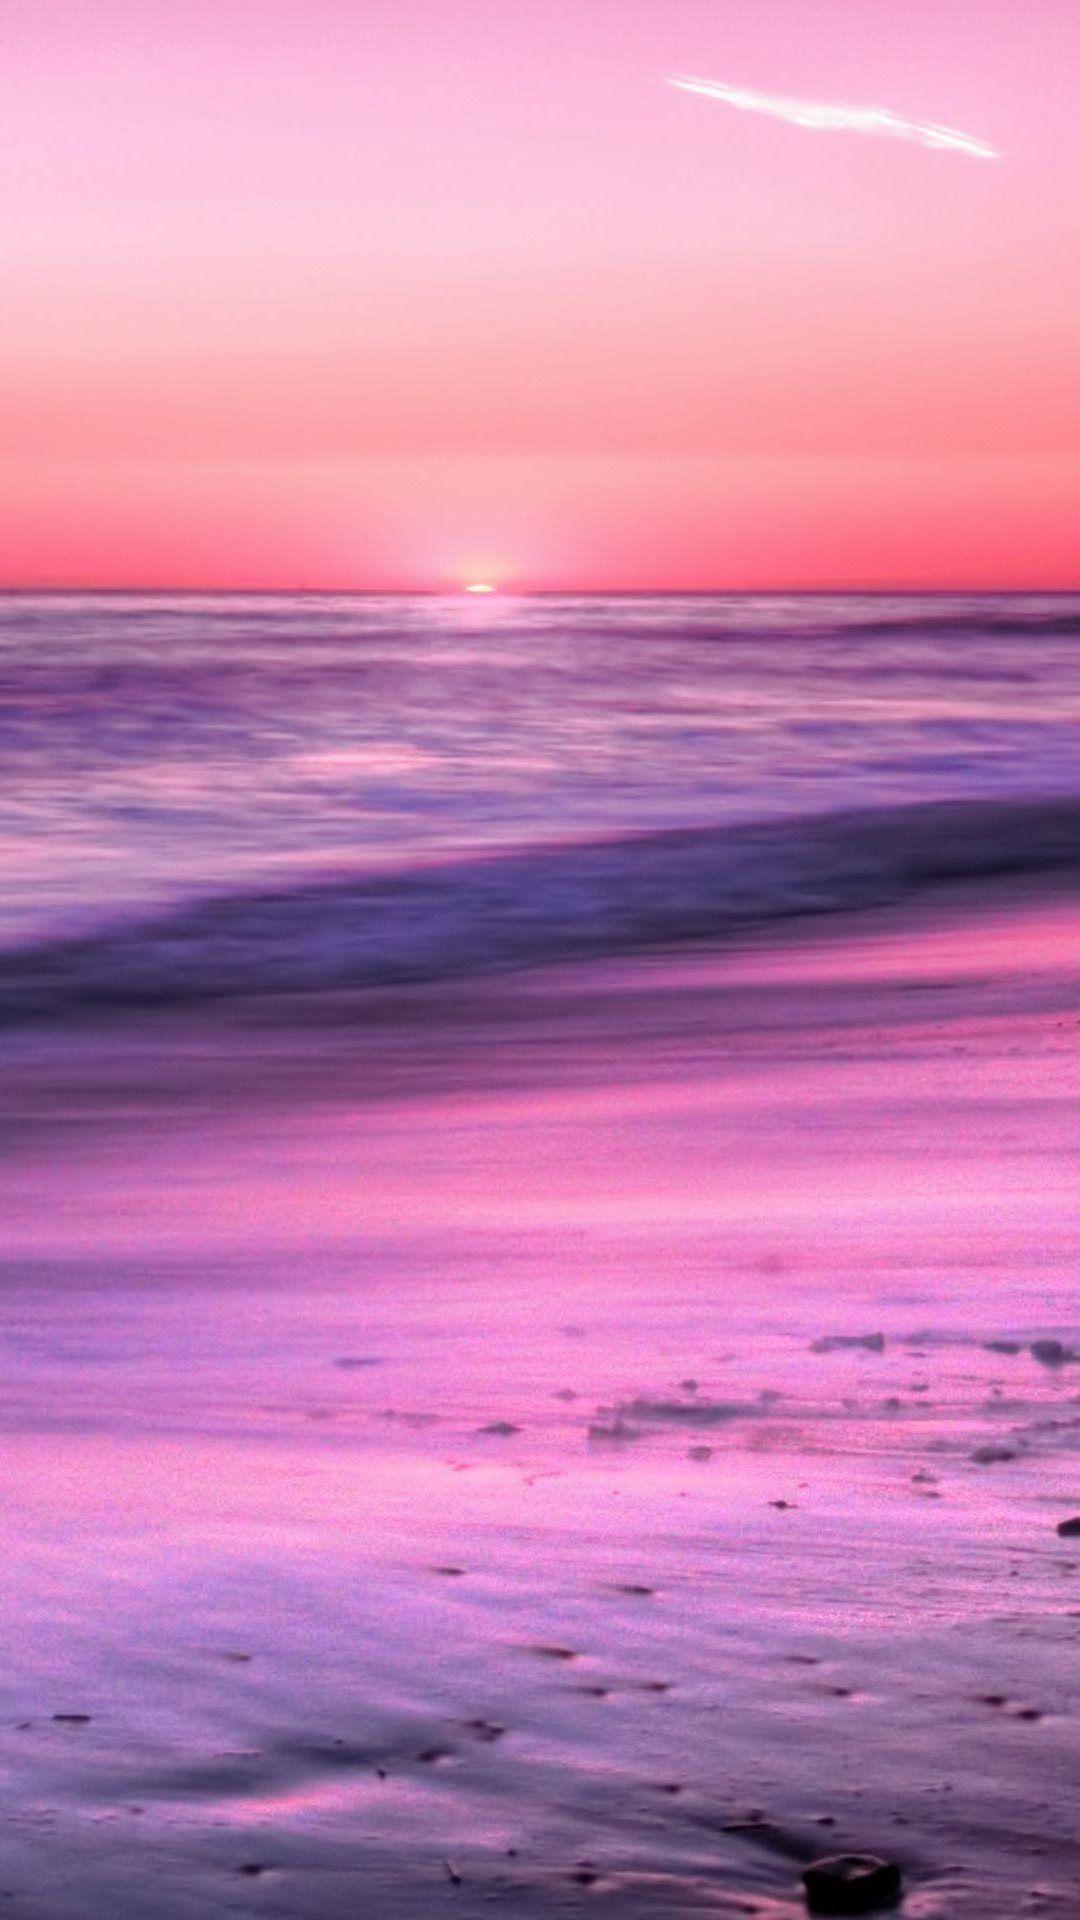 Hãy dành chút thời gian để ngắm nhìn bức ảnh với phông nền đại dương hồng tươi, đem đến cảm giác thanh thản và đầy màu sắc cho bạn. Bức ảnh sẽ thổi bùng sự yên bình và nhẹ nhàng vào không gian của bạn, giúp bạn tìm lại sự cân bằng trong cuộc sống. Hãy để mình được trầm mình trong khung cảnh tuyệt đẹp này và lướt nhẹ trên những tia nắng ấm áp của bầu trời đầy tình yêu.